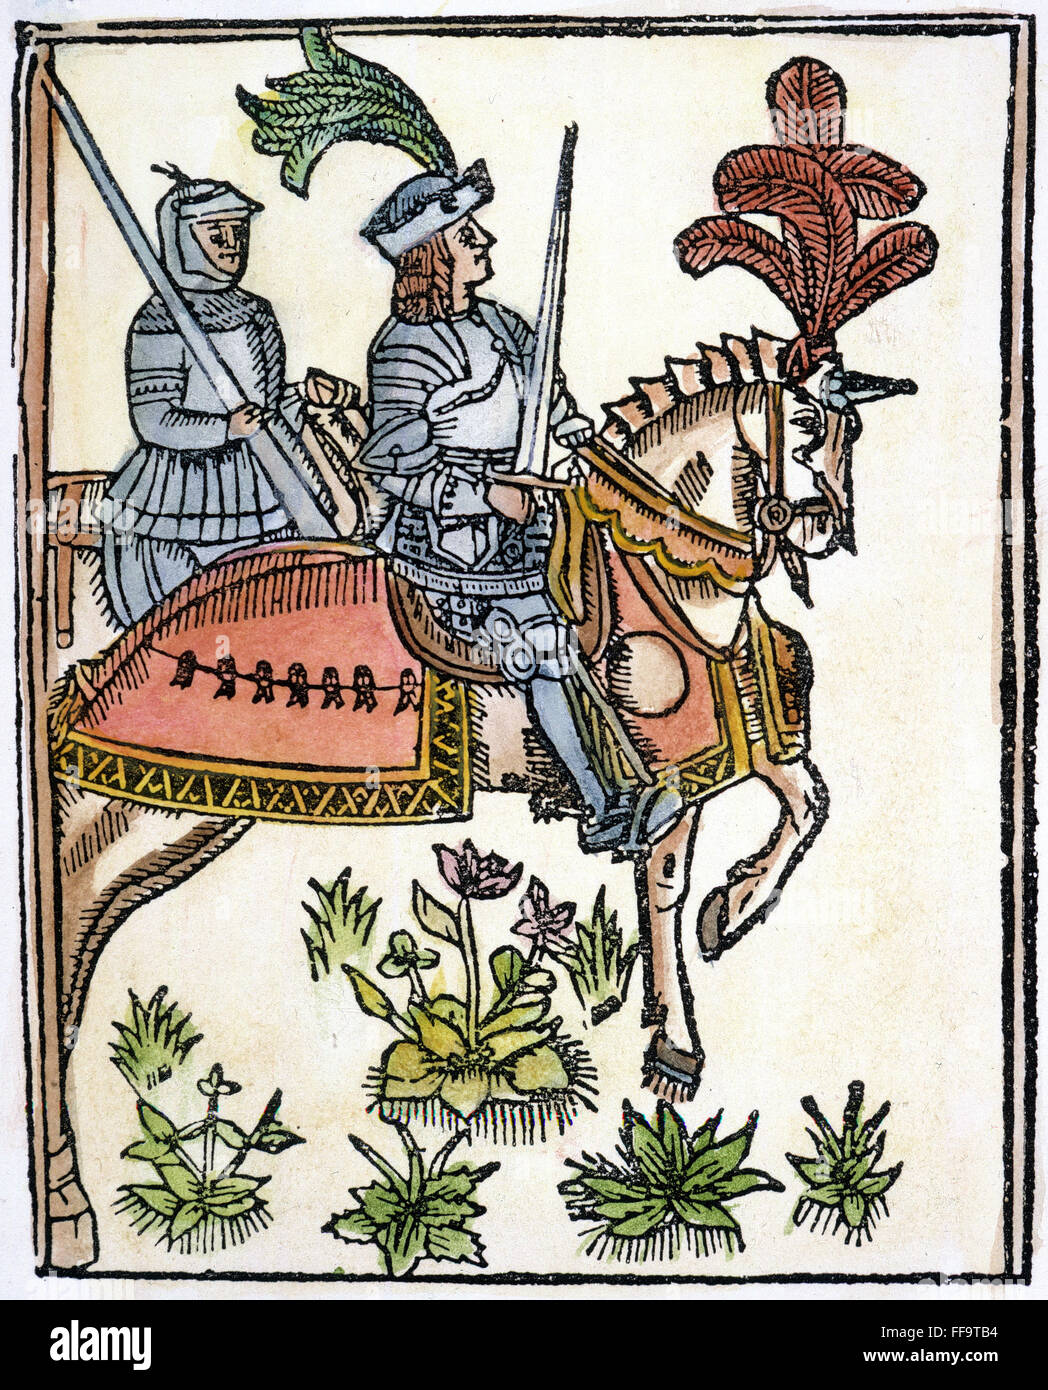 König RICHARD ich/Nof England, mit dem Beinamen Coeur de Lion oder Löwenherz (1157-1199). Holzschnitt aus die metrische Romantik der "Richard Coeur de Lion" von Wynkyn de Worde 1528 gedruckt. Stockfoto